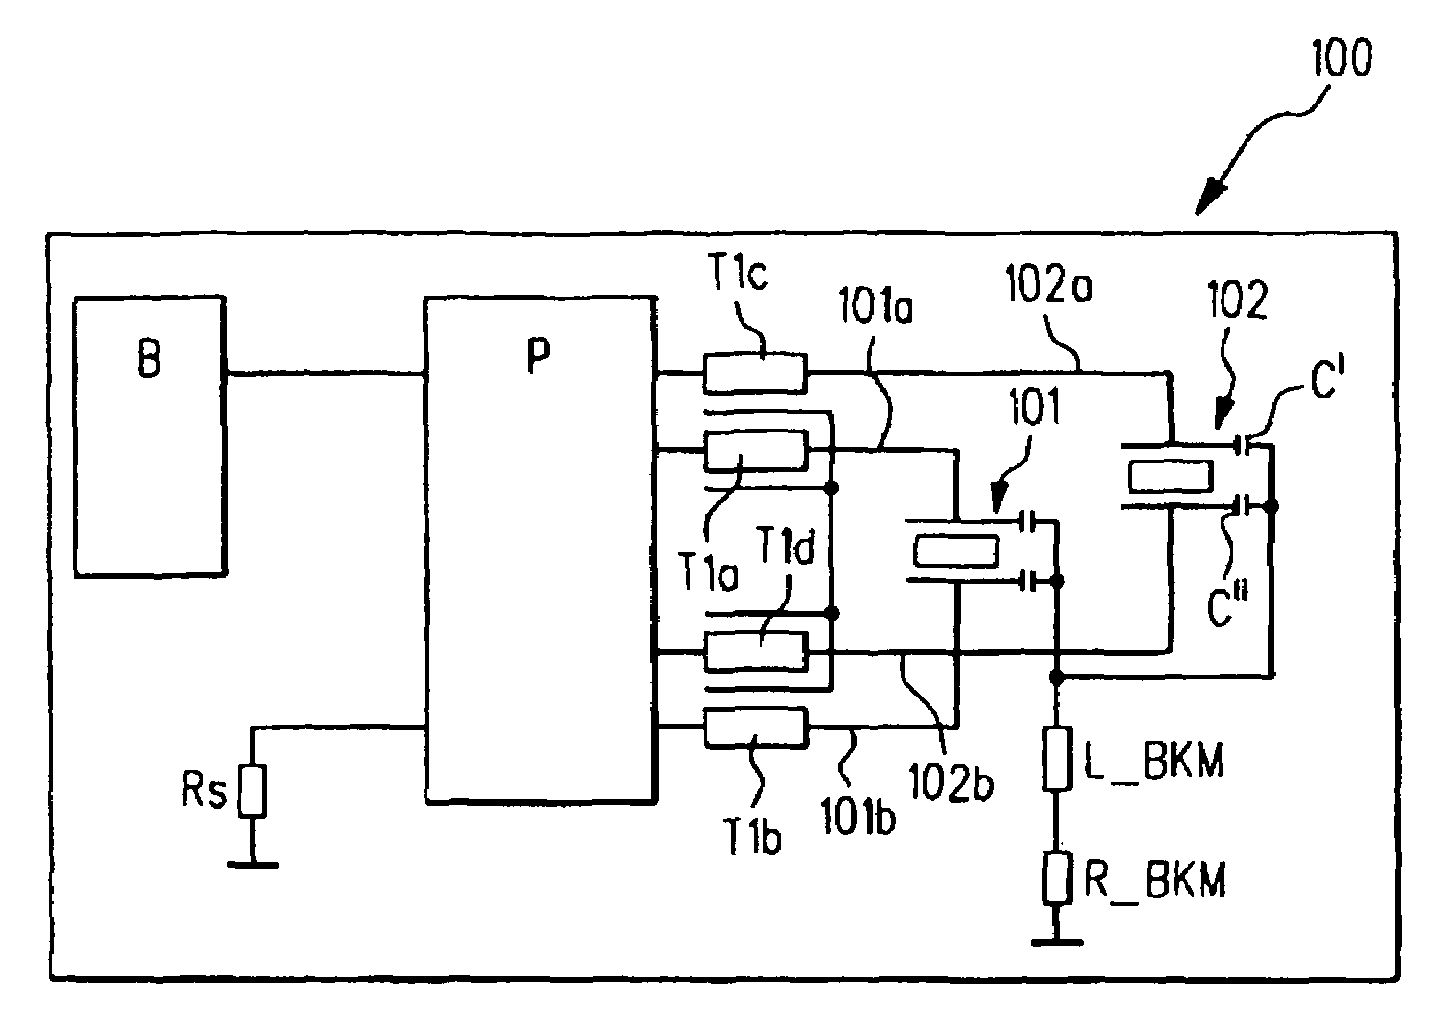 Control circuit for an actuator